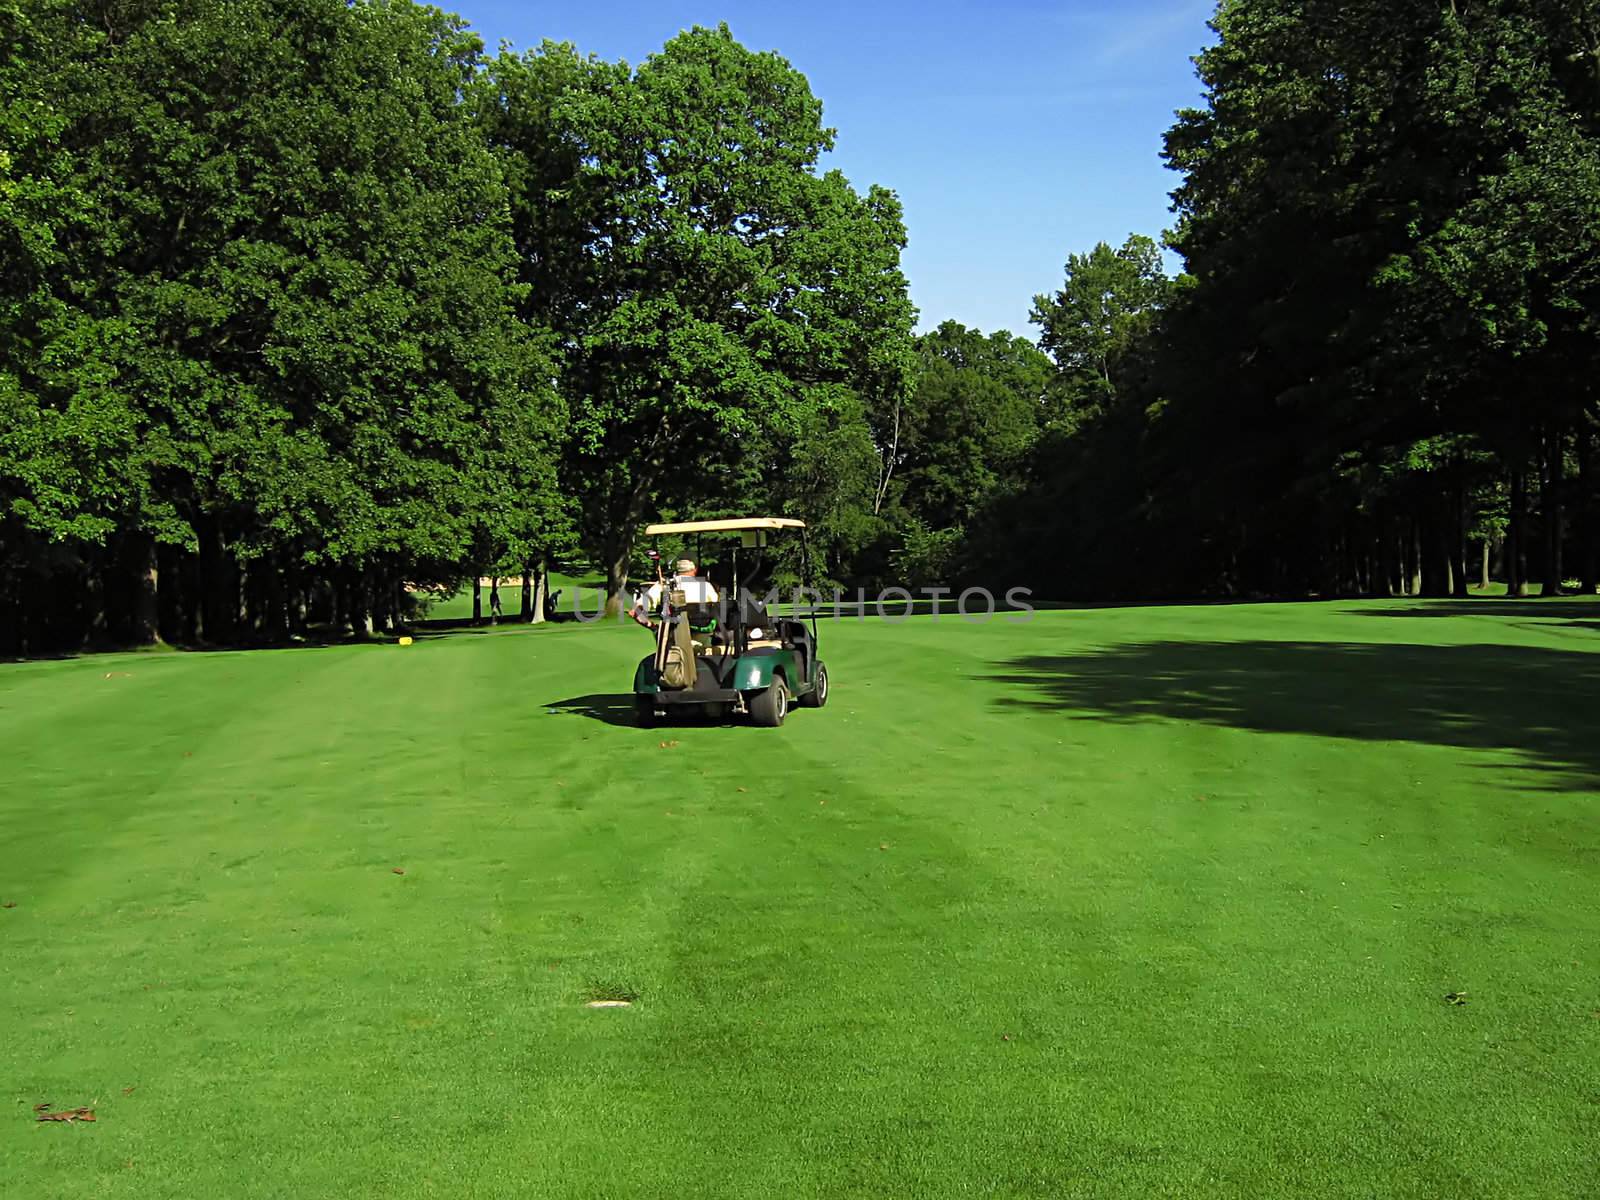 A photograph of a golf cart on a golf course.